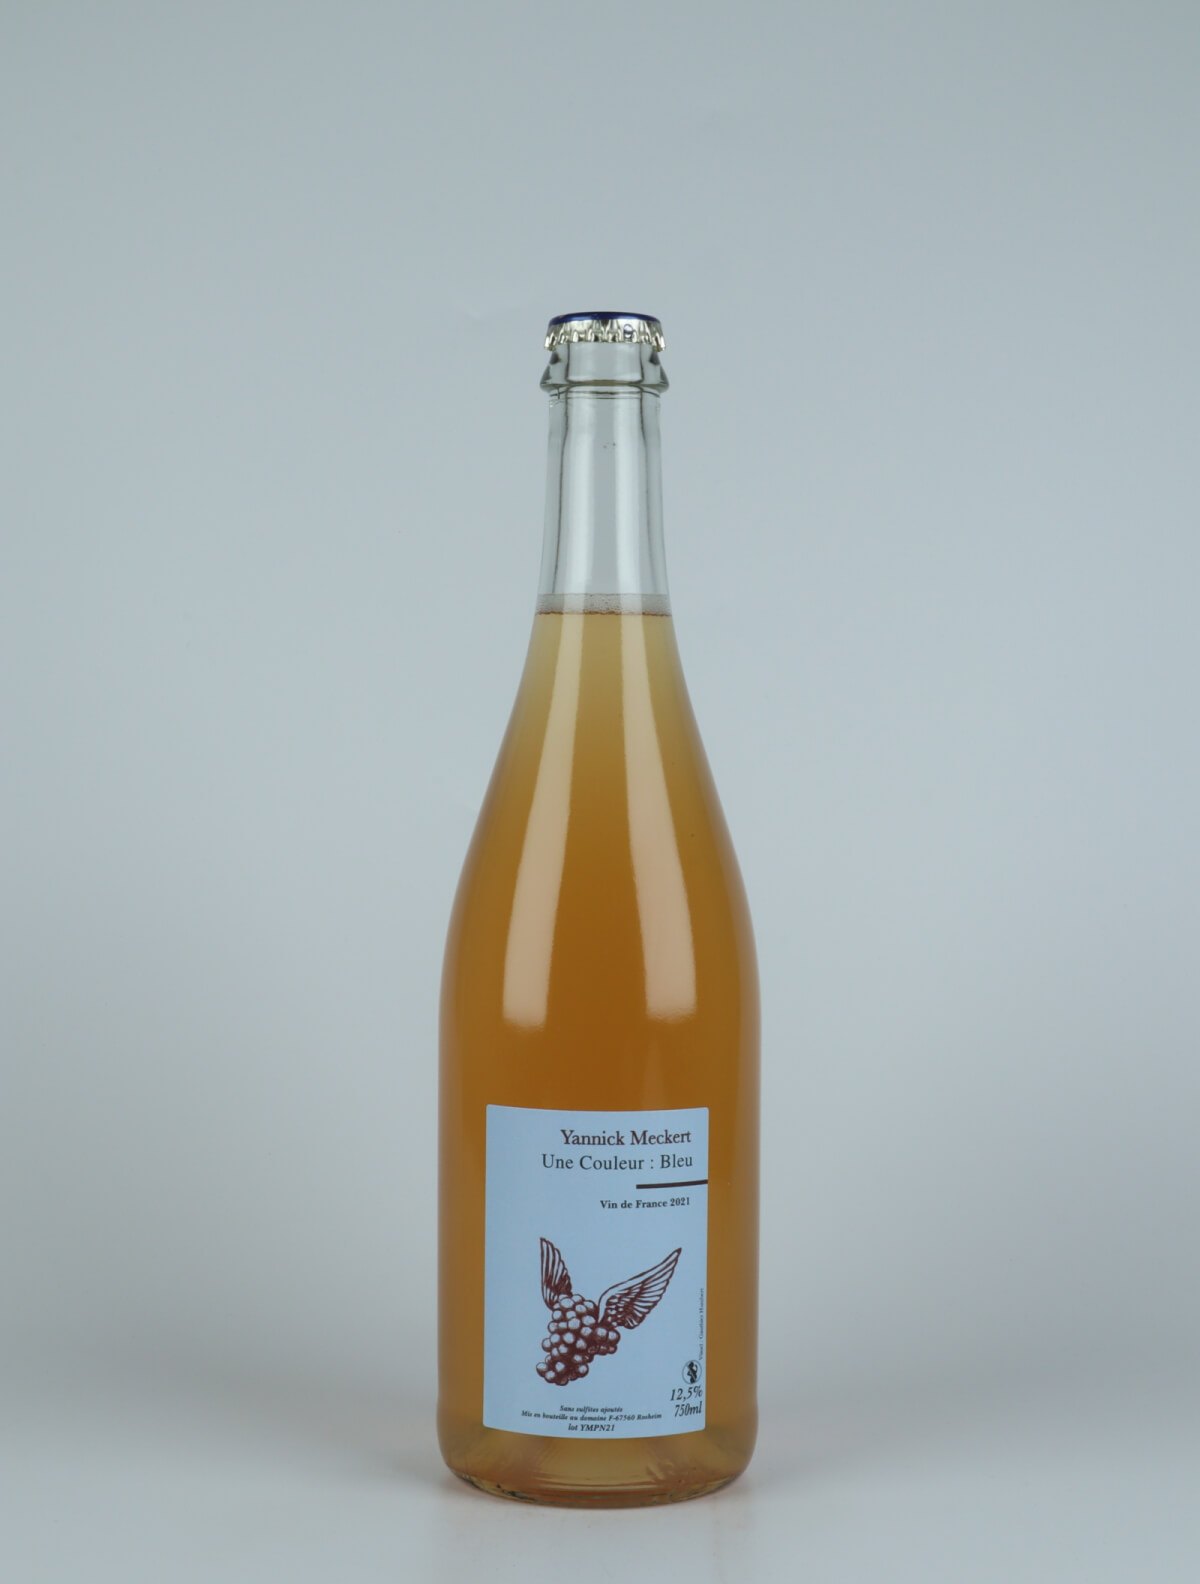 A bottle N.V. Petnat Sparkling from Yannick Meckert, Alsace in France